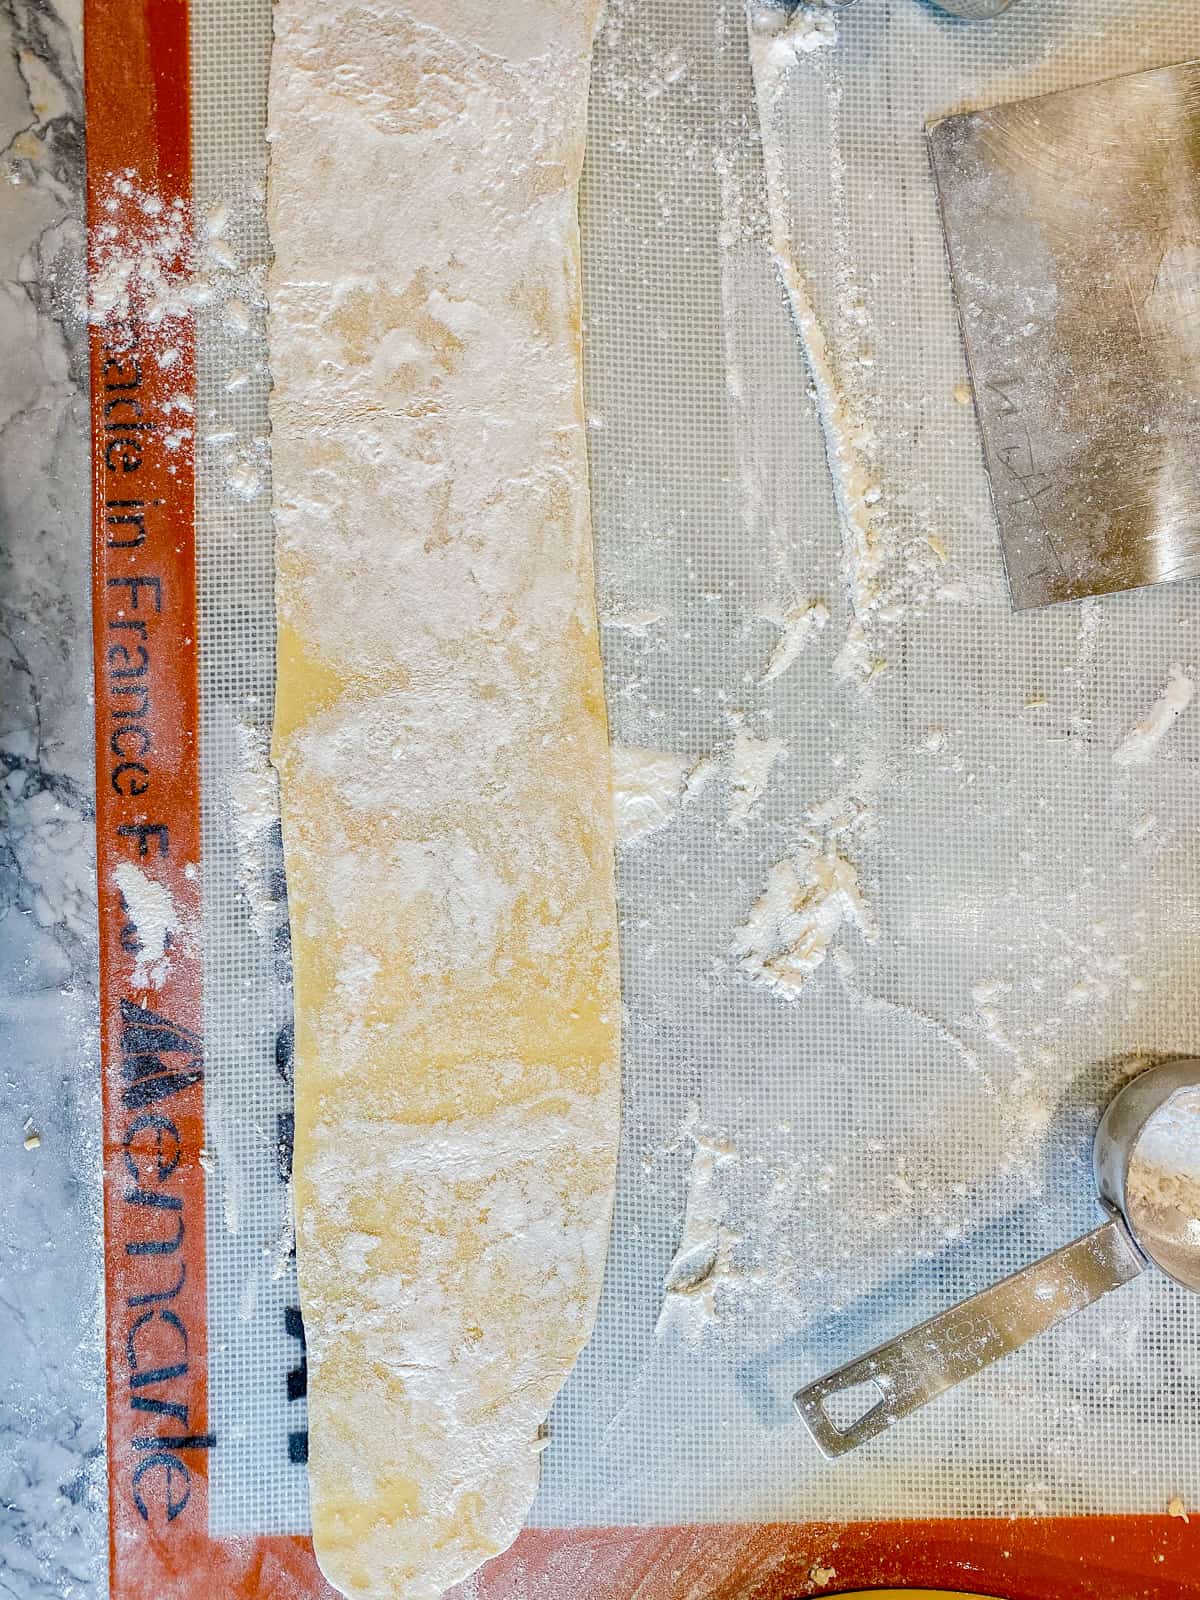 Sheet of fresh pasta dough on a floured Silpat mat.